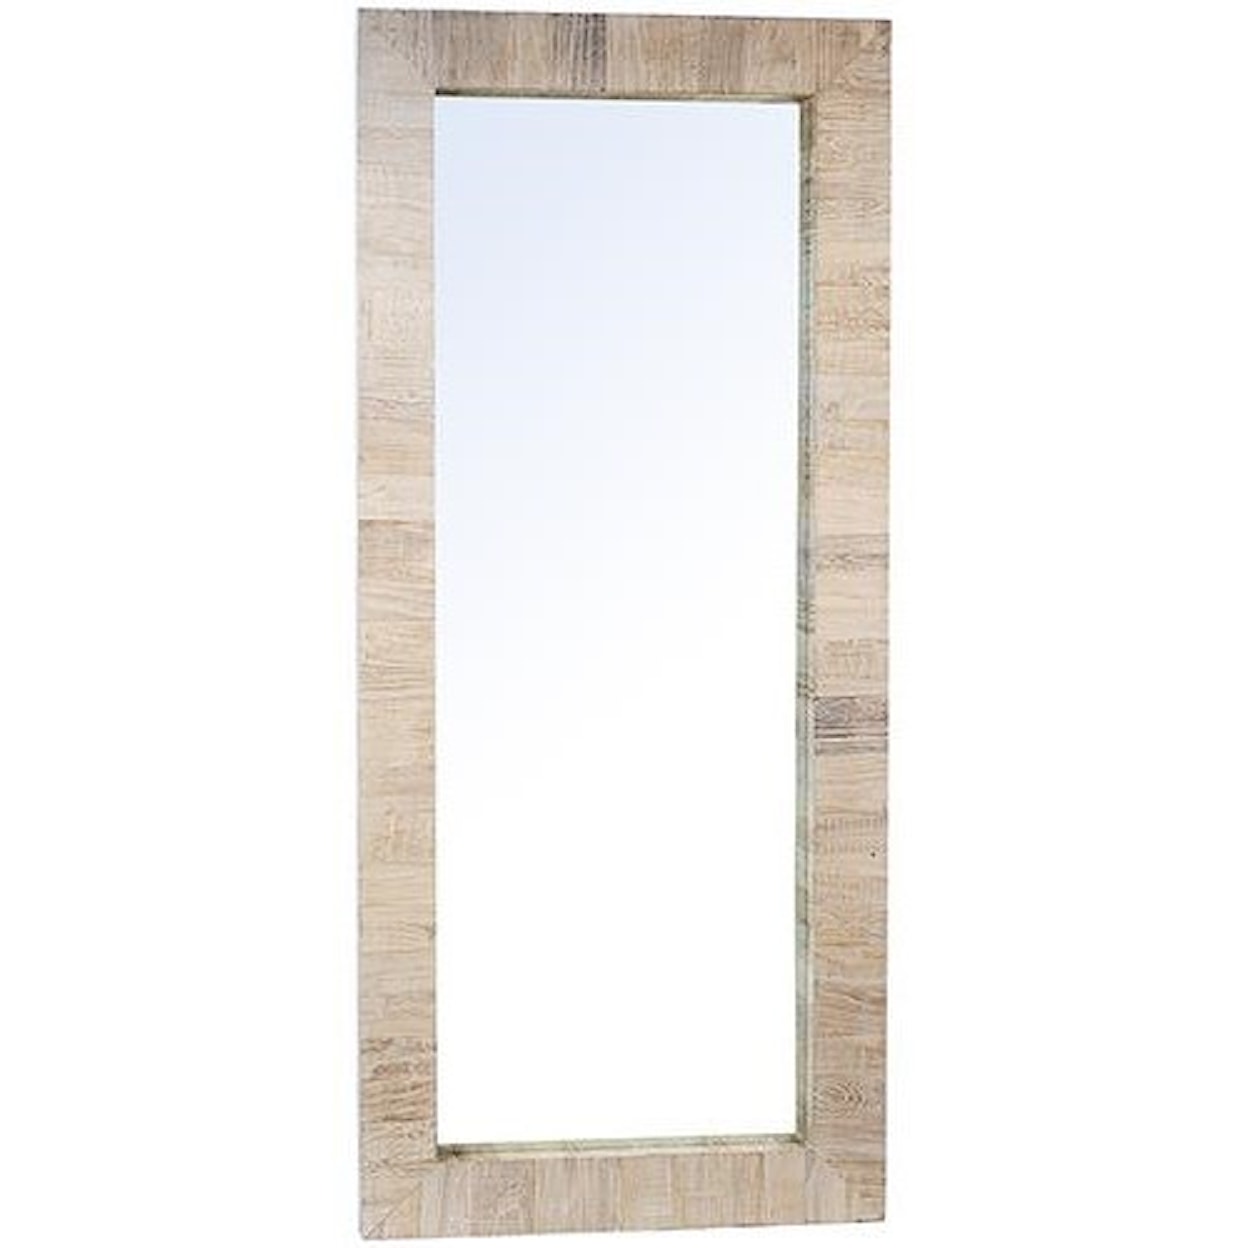 Dovetail Furniture Mirrors Genesis Rectangular Mirror